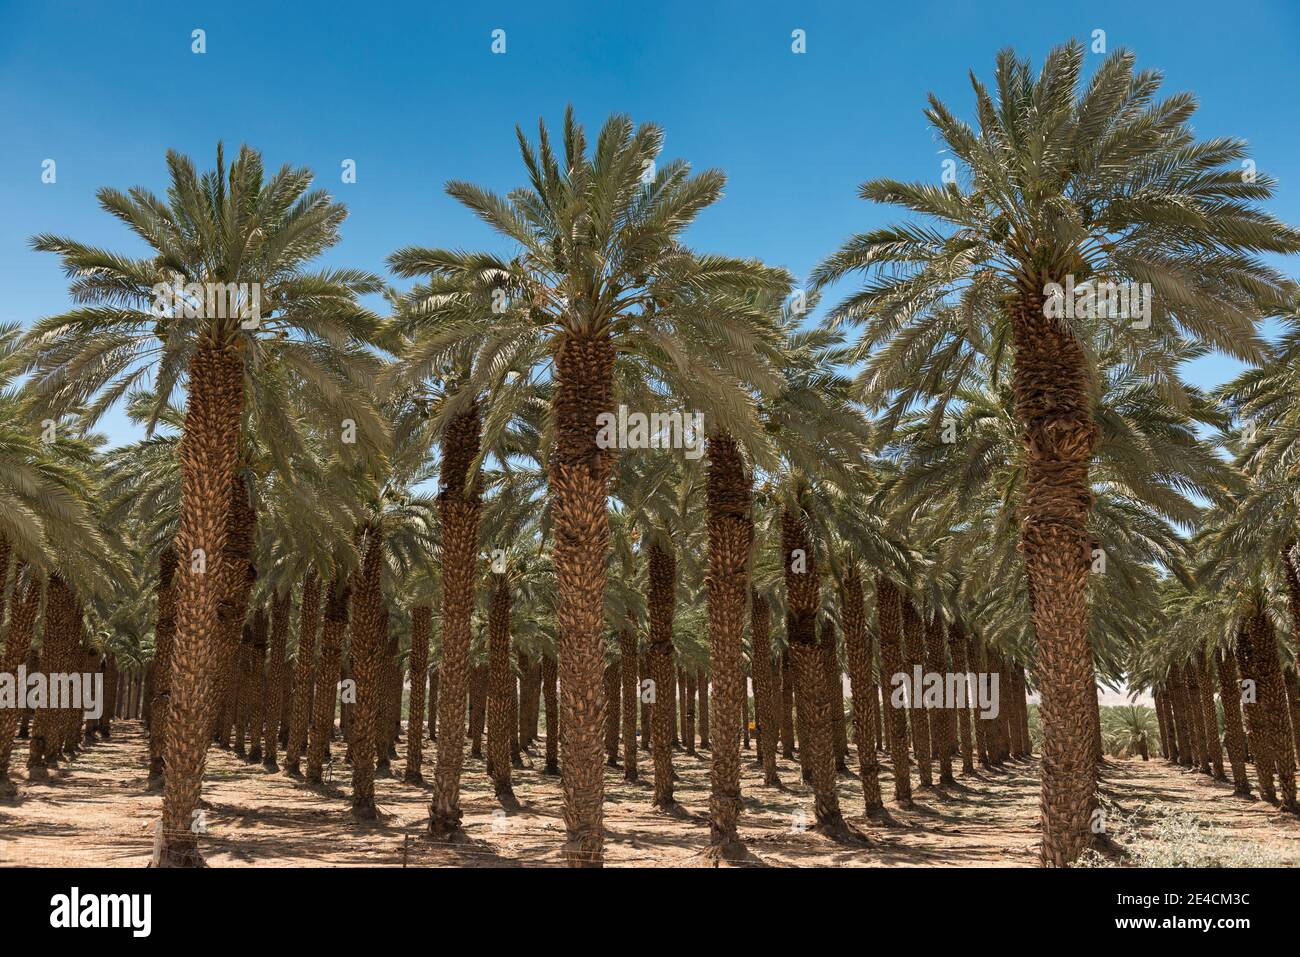 Moyen-Orient, Israël, Mer Morte, Ein Gedi, palmiers dans le paysage désertique Banque D'Images